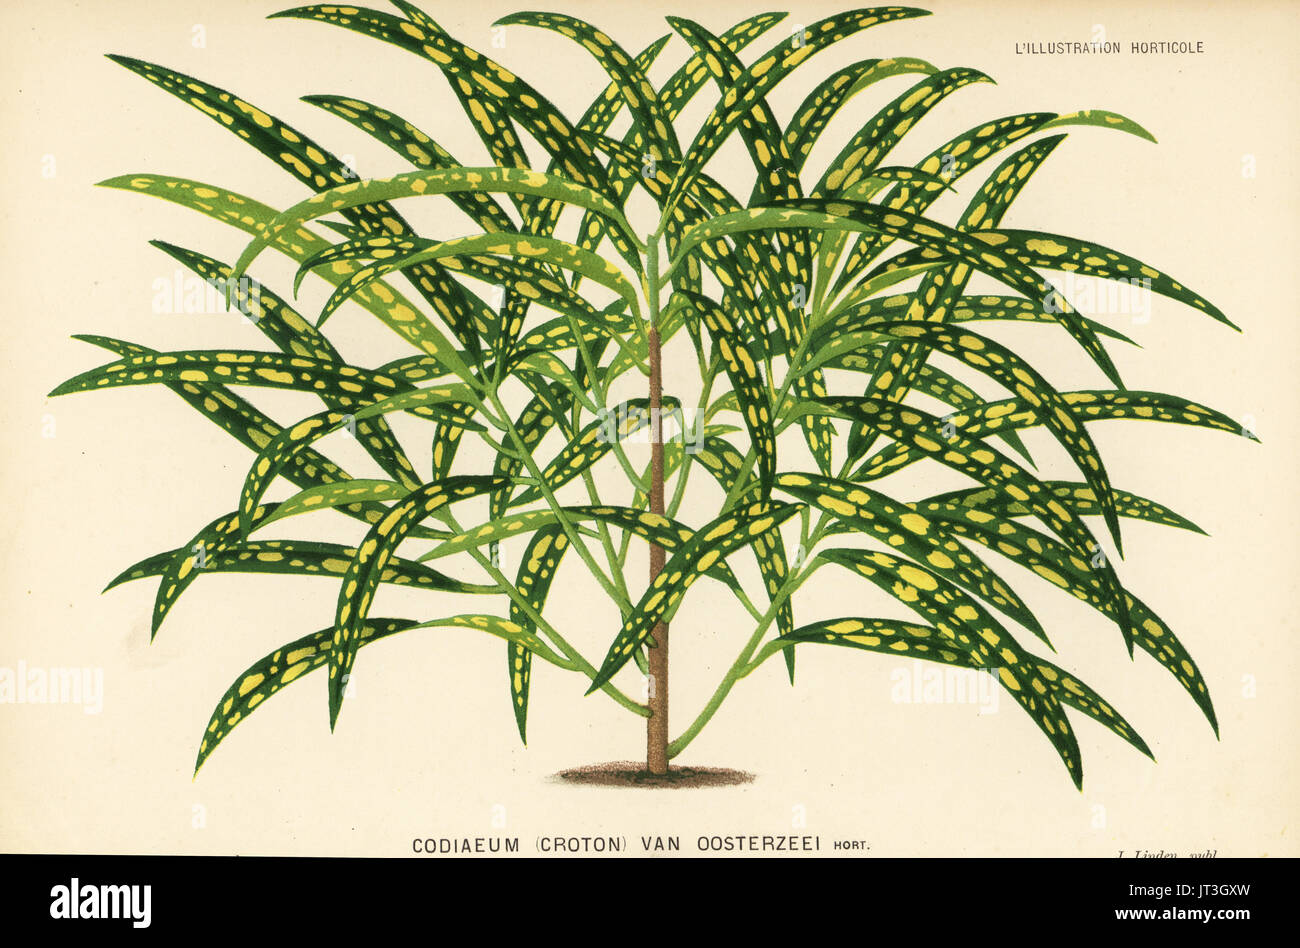 Garden croton Codiaeum variegatum, Codiaeum (vanoosterzeei). Chromolithographie de Pieter De Pannemaeker de Jean Linden's l'Illustration horticole, Bruxelles, 1883. Banque D'Images